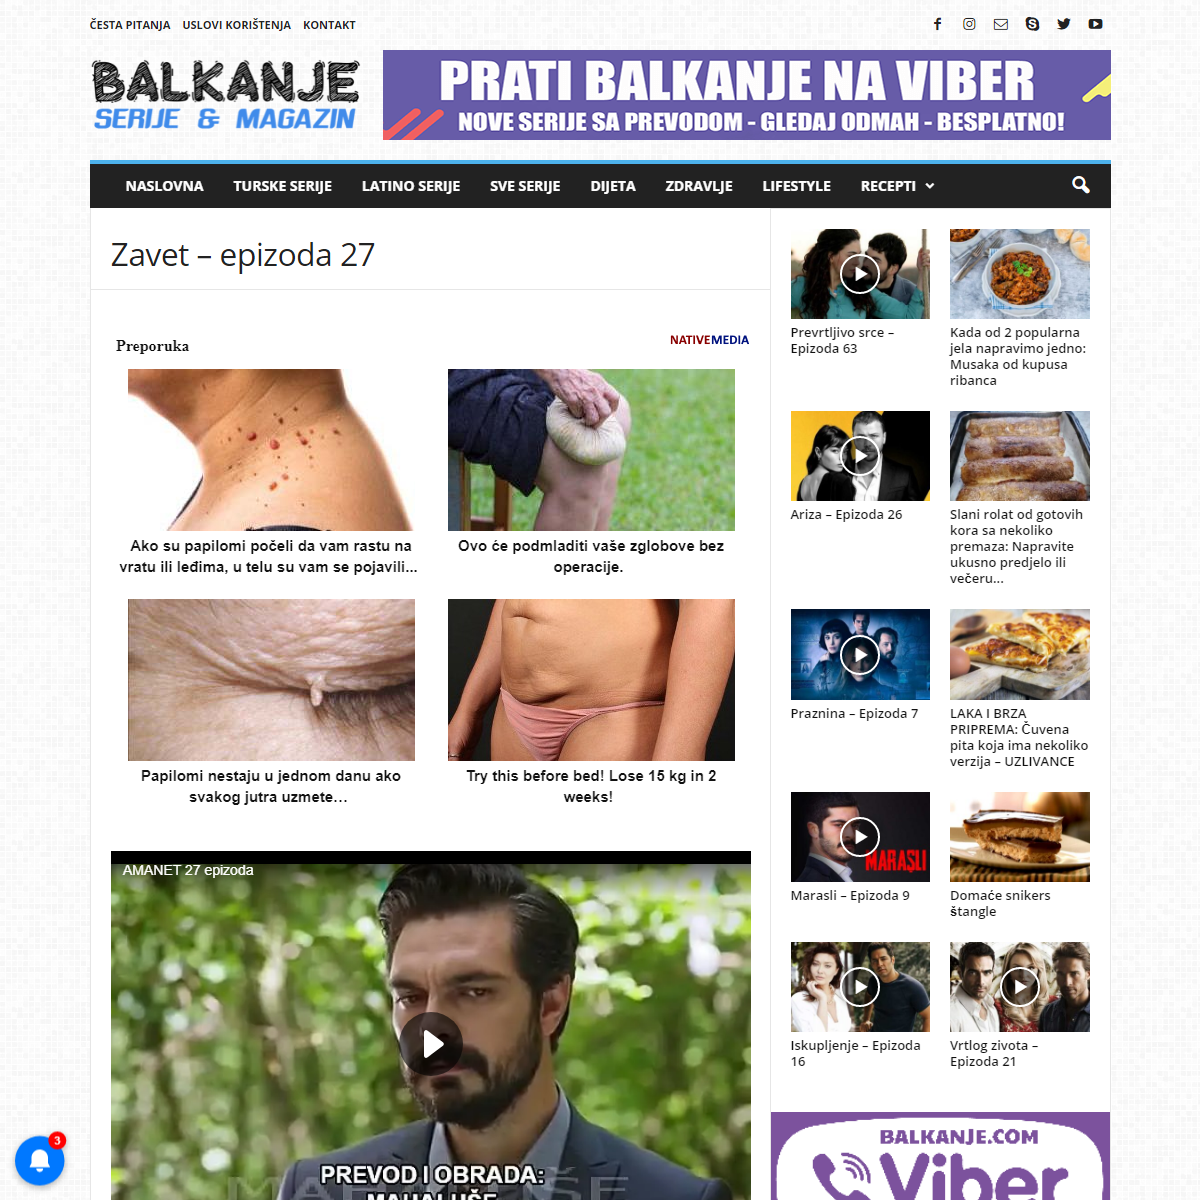 A complete backup of https://balkanje.com/zavet-epizoda-27/